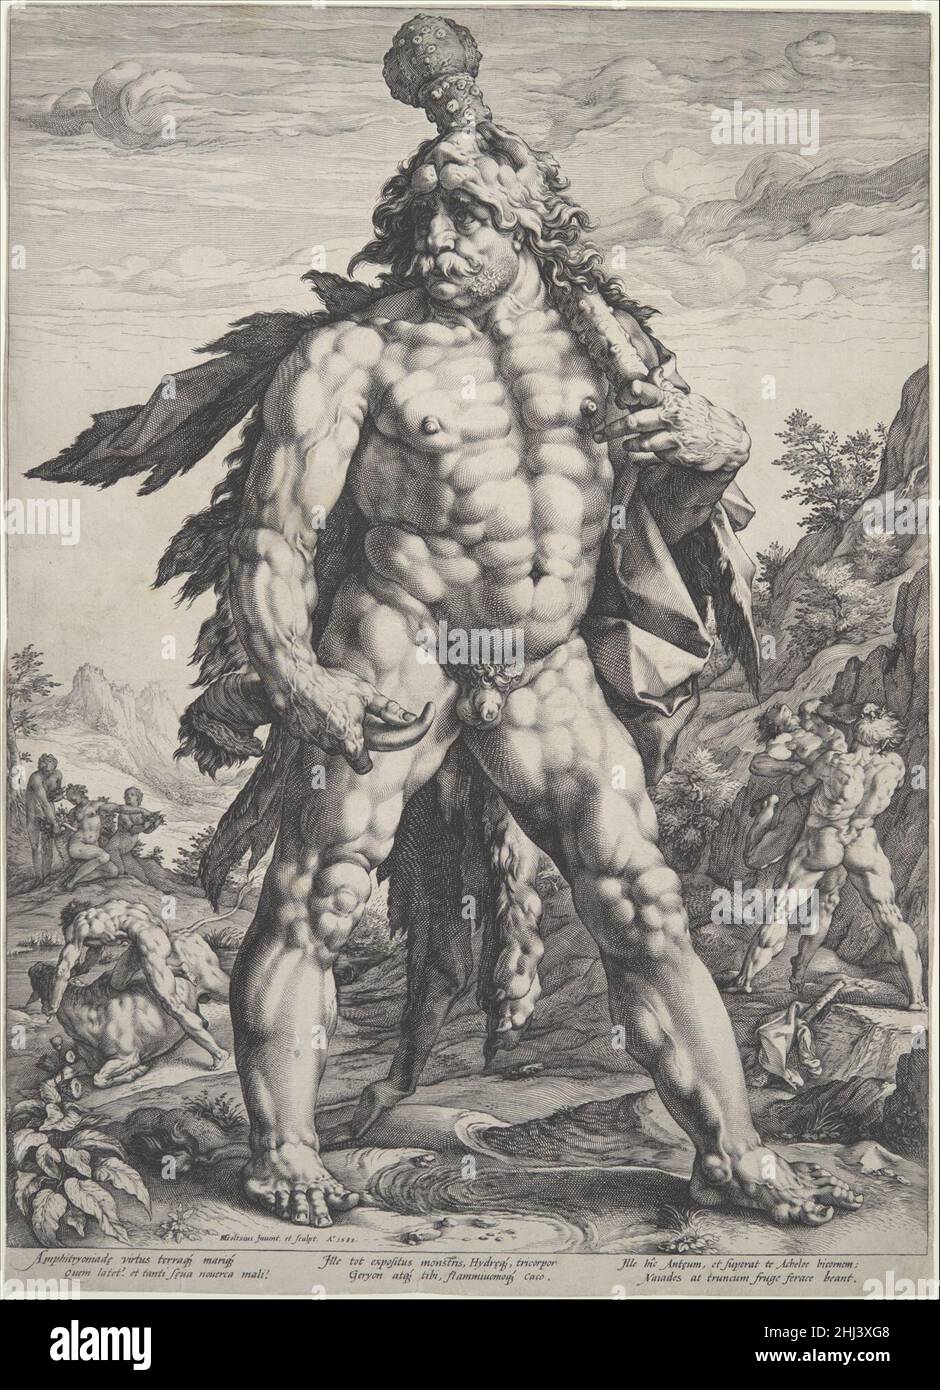 Il grande Ercole 1589 Hendrick Goltzius Netherlandish questa incisione notevole è stata a lungo conosciuta come il Knollenman, o uomo bulbo. Mostra lo stile di figura del muscolo-rigonfiamento di Goltzius al relativo estremo. Questo Ercole è quasi una versione gonfiata del lithe Apollo di un anno prima (51.501.3). Hercules era spesso associato con gli olandesi nella loro ribellione contro la Spagna, e una interpretazione del suo aspetto strano è che era inteso come un'incarnazione della nazione olandese.questo pezzo stupefacente esemplifica la fiducia evidente nel lavoro di Goltzius della fine del 1580s. il swe profondamente tagliato Foto Stock